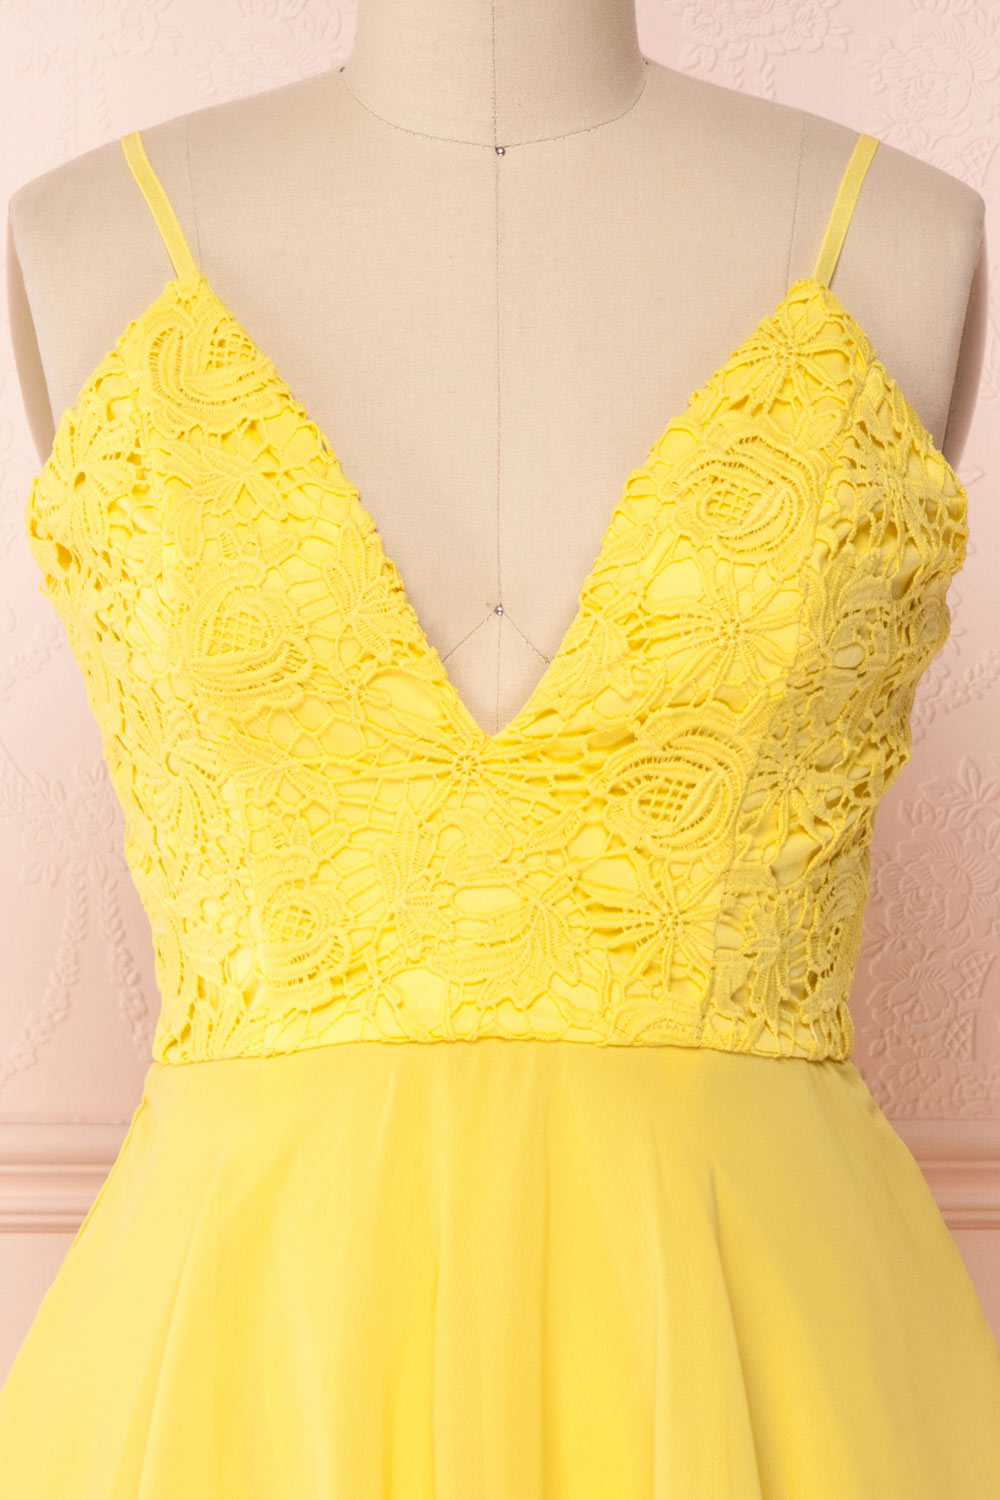 Lio Yellow | Lace & Chiffon Dress